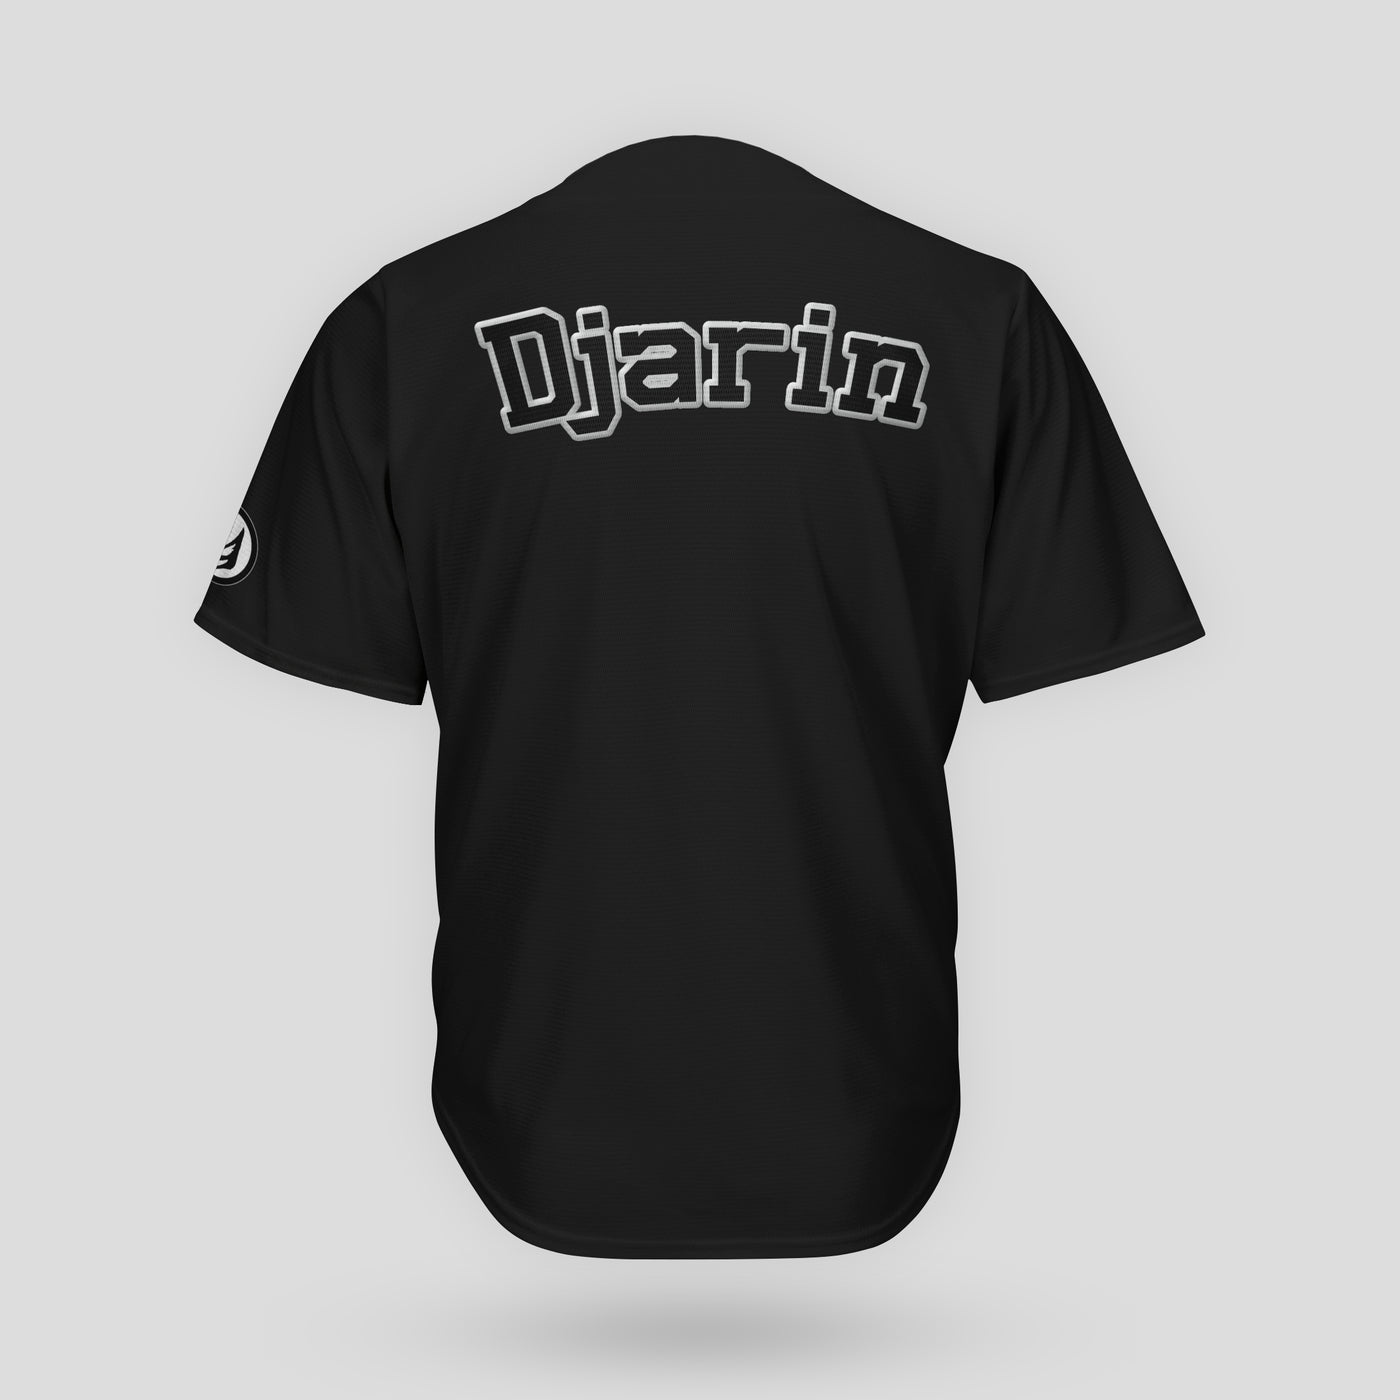 Djarin | Baseball Jersey